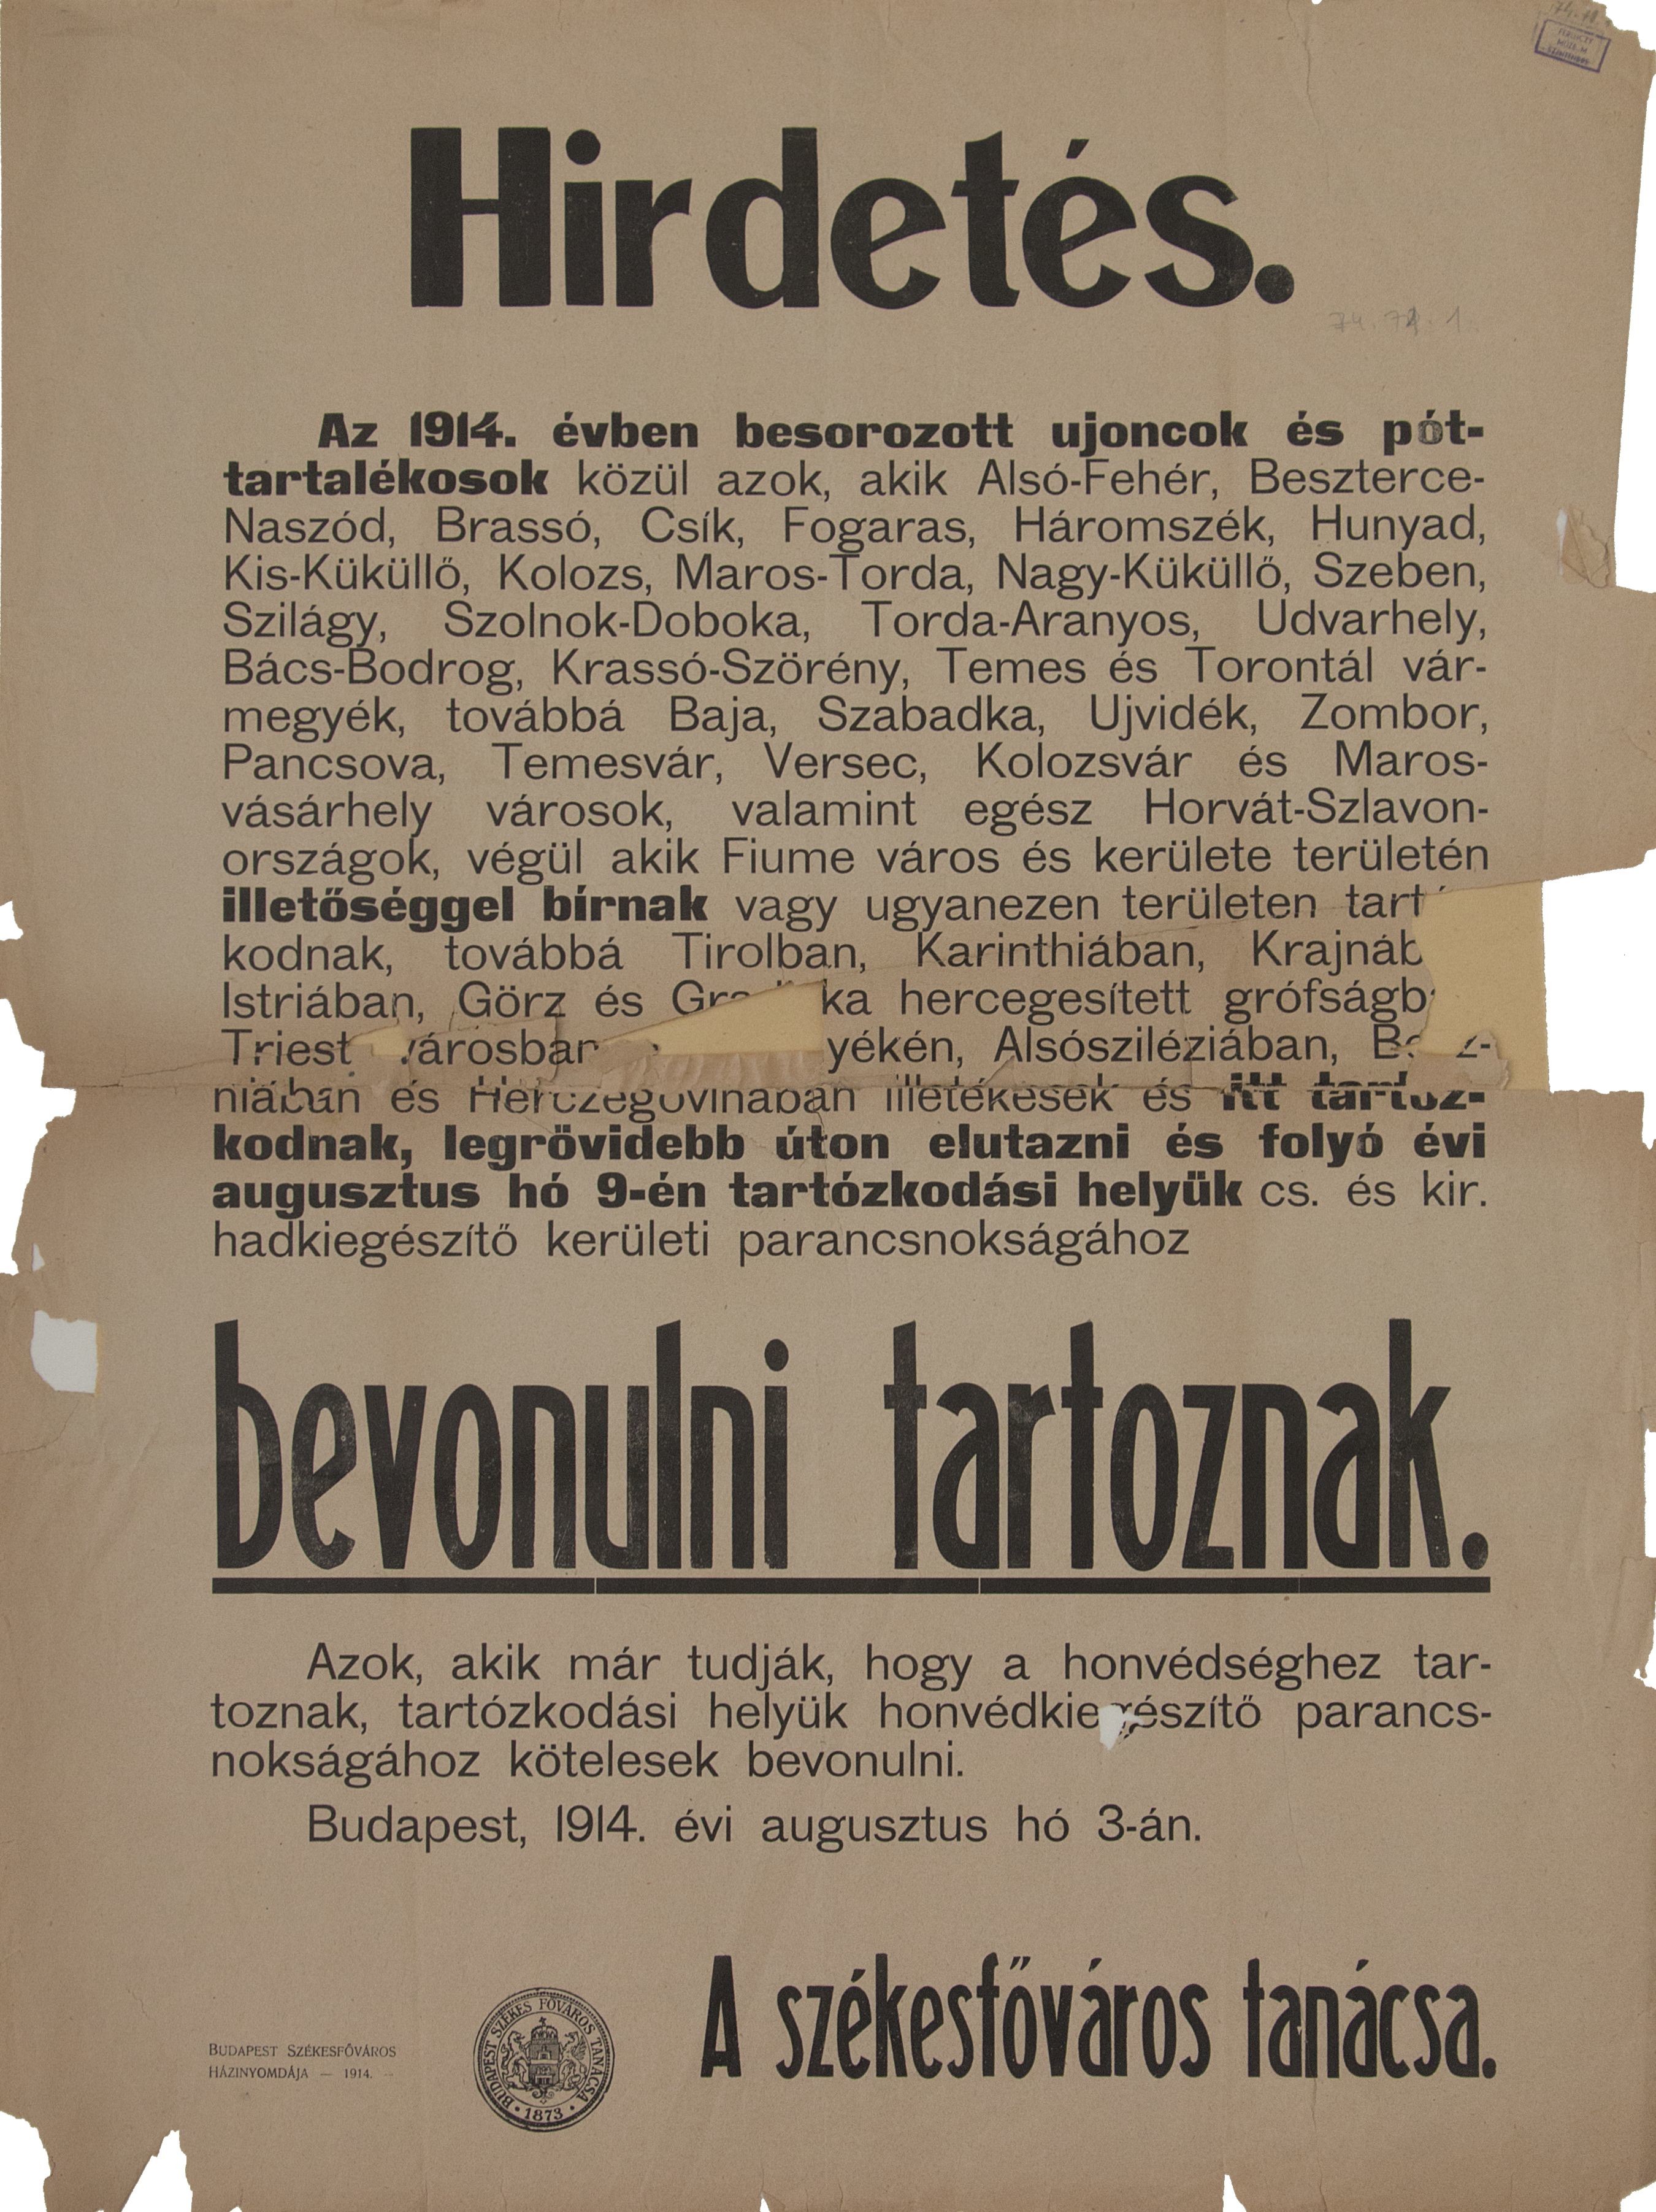 Hirdetés a besorozott újoncok bevonulásival kapcsolatban, 1914.08.03. (Ferenczy Múzeumi Centrum CC BY-NC-SA)